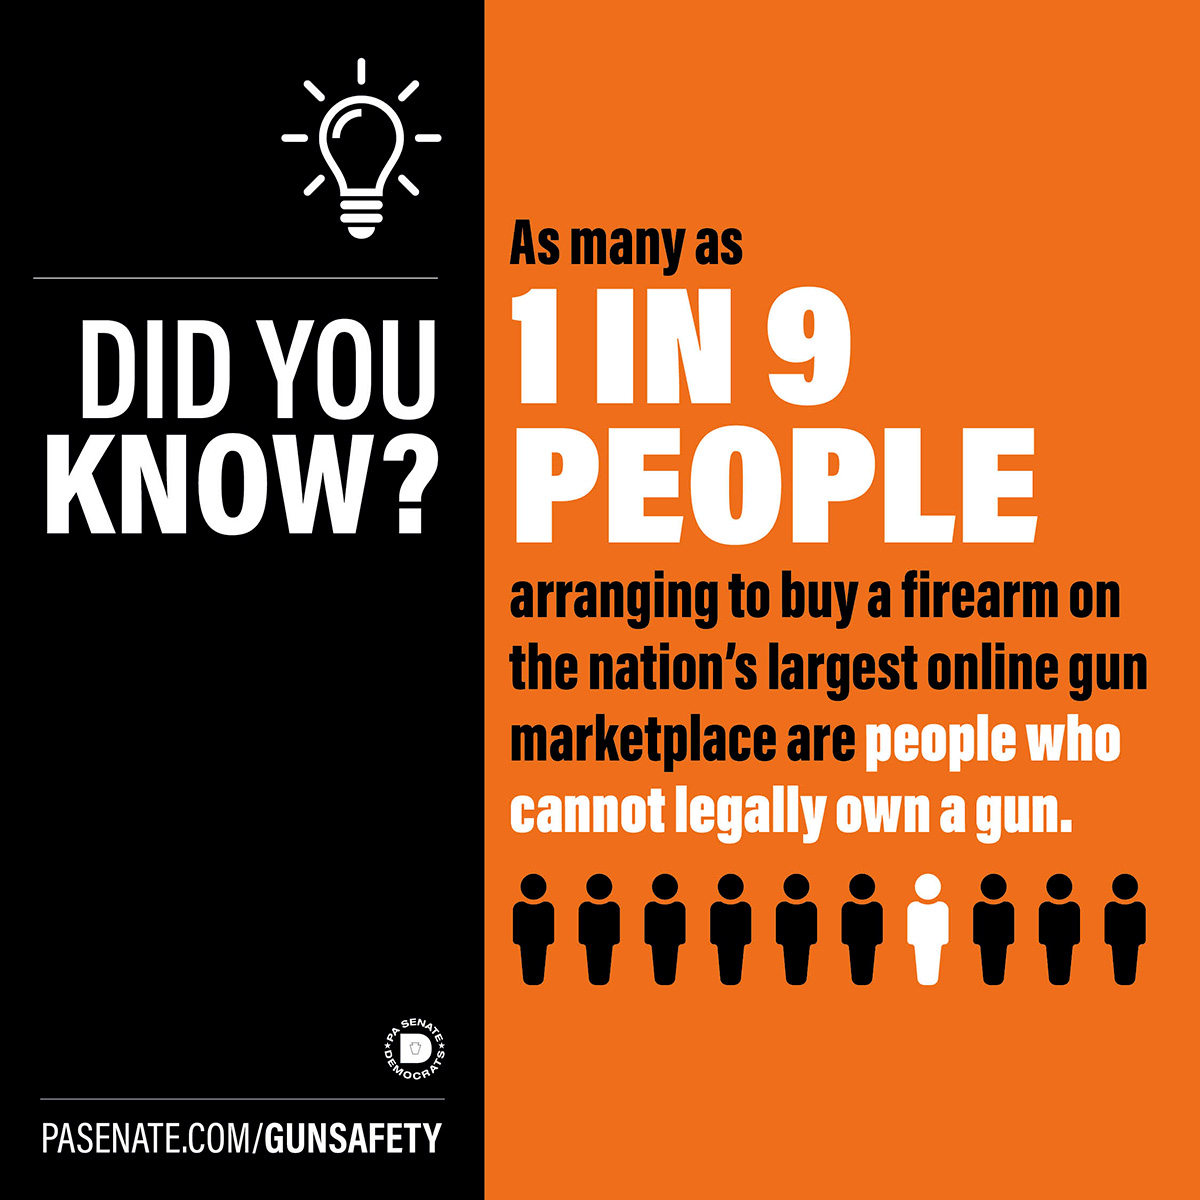 ¿Sabía que? Hasta 1 de cada 9 personas que se disponen a comprar un arma de fuego en el mayor mercado de armas en línea del país son personas que no pueden poseer legalmente un arma de fuego.